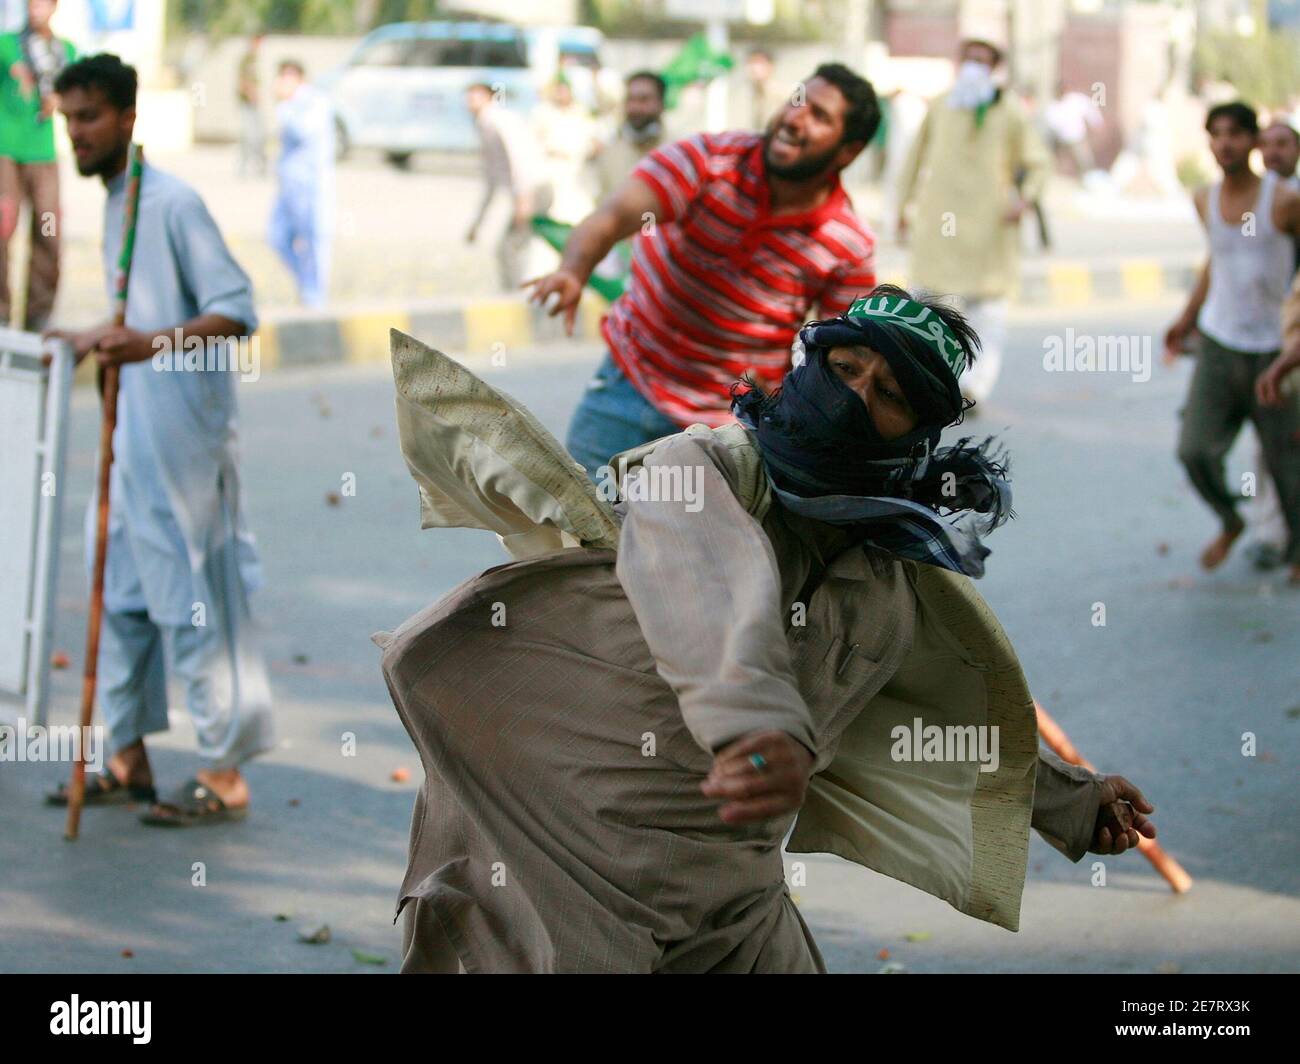 Demonstranten mit Steinen auf Polizisten während einer landesweiten Anti-Regierungs Protestmarsch in Lahore 15. März 2009 werfen. Pakistanische Demonstranten erkämpften Straßenschlachten mit der Polizei am Sonntag in einem Showdown, der neue Sorgen über die Stabilität in der Atom - angesprochen hat bewaffnet Verbündeter der USA.   REUTERS/Faisal Mahmood (PAKISTAN-Konflikt-Politik) Stockfoto